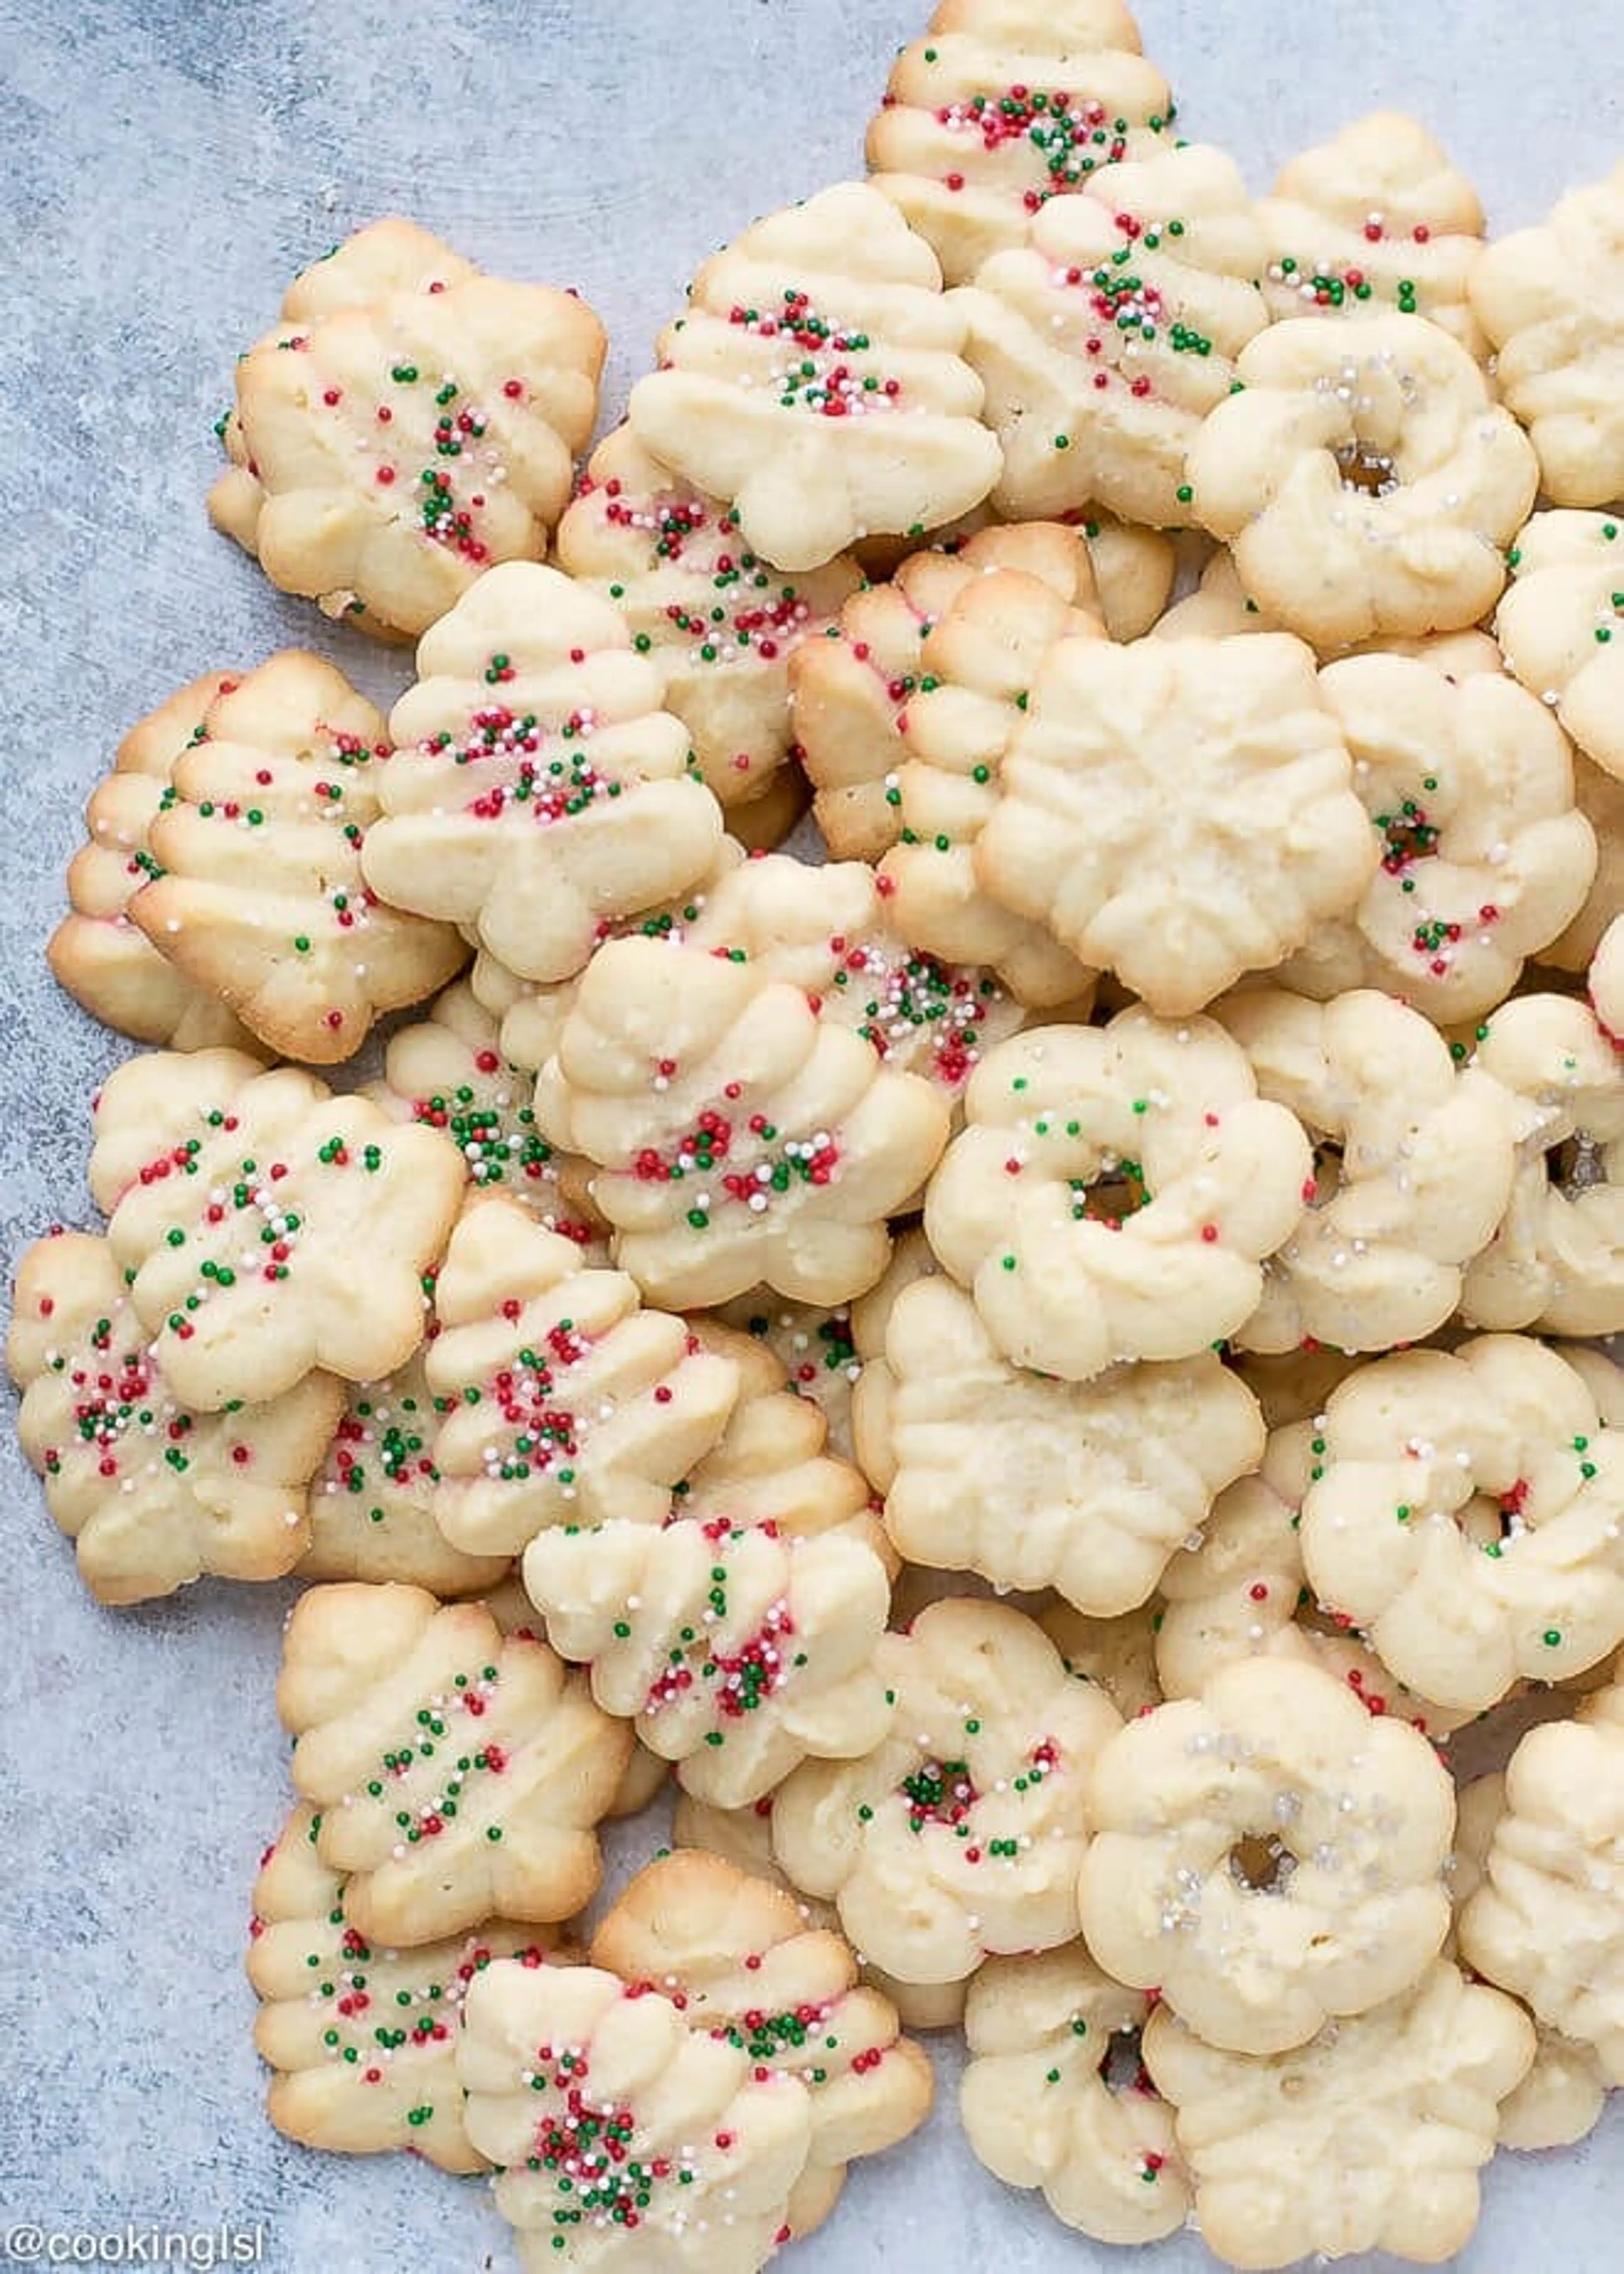 Grandma Adams’ Snowflake Christmas Cookies